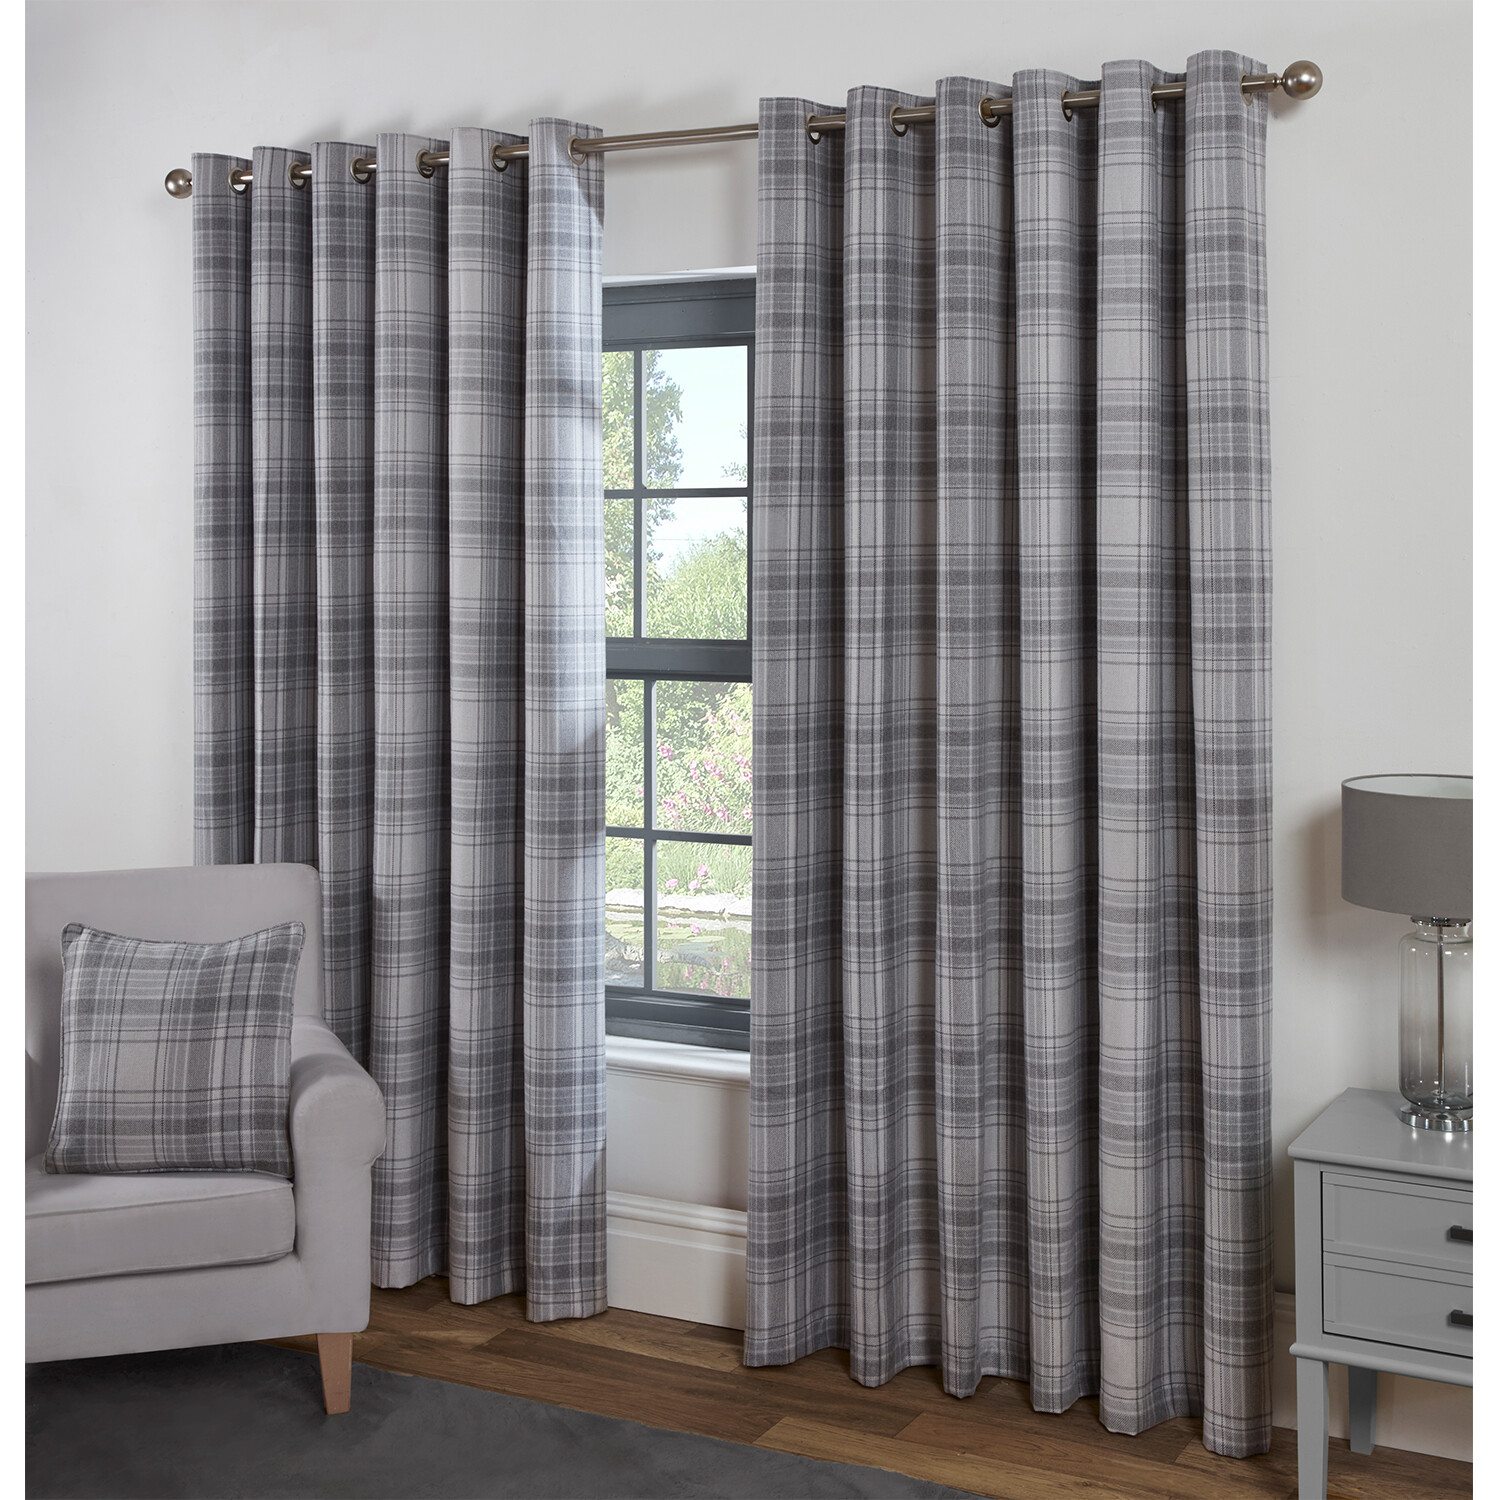 Divante Hatfield Grey Check Blackout Curtains 229 x 229cm Image 2